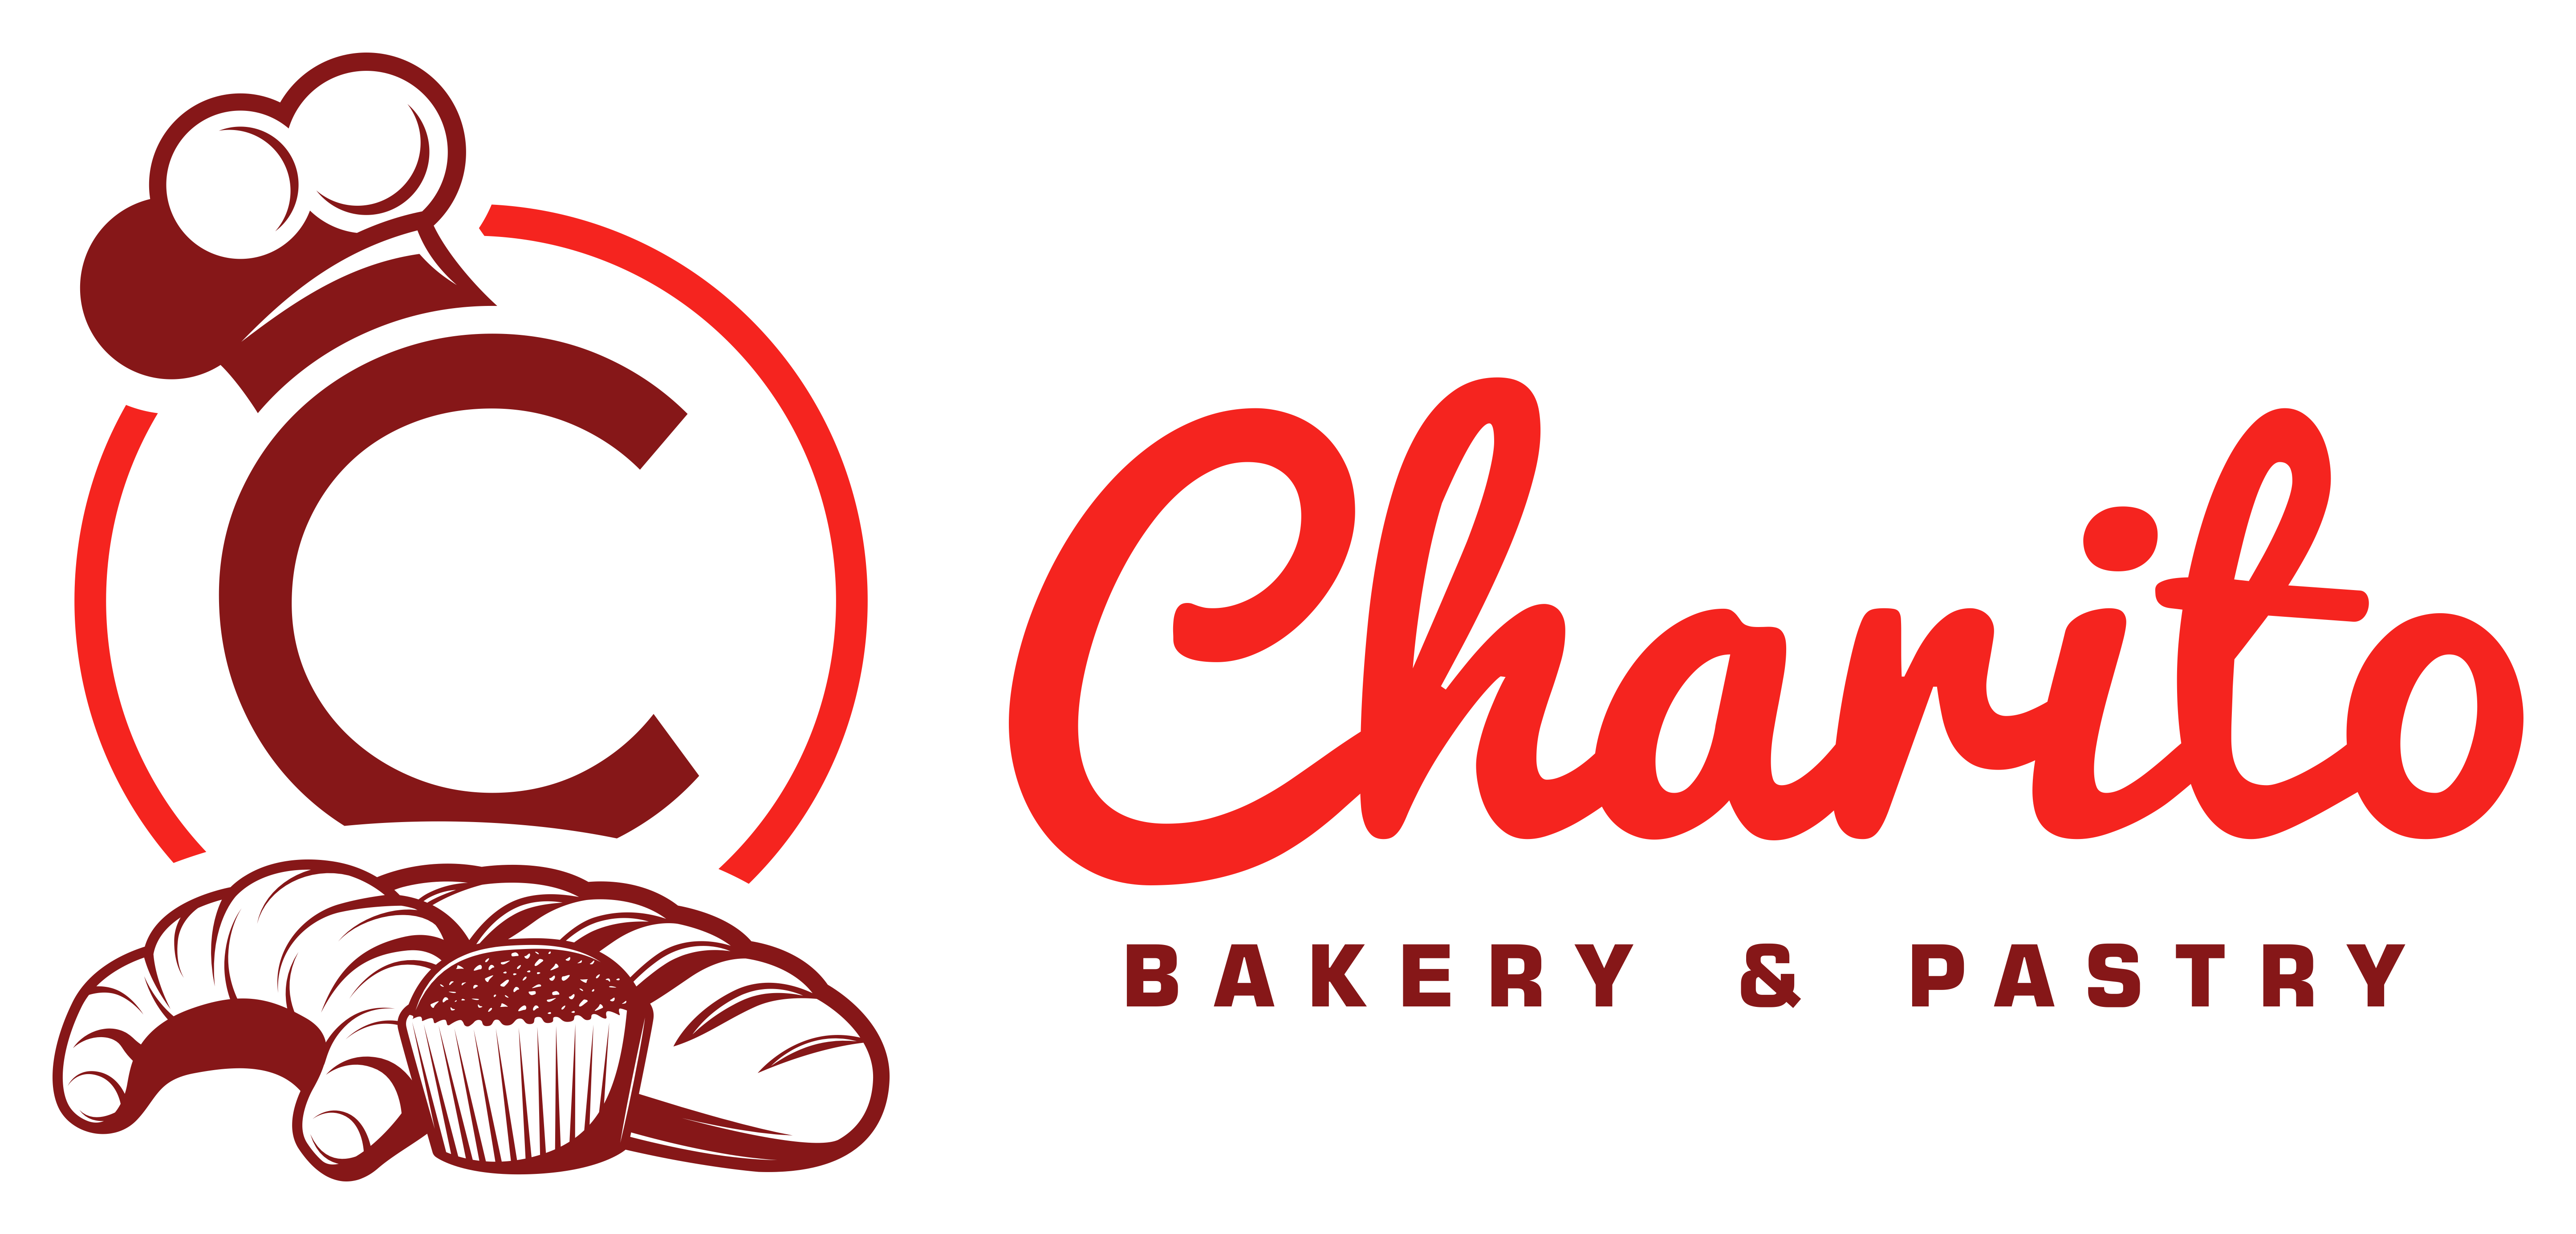 Charito Bakery & Pastry